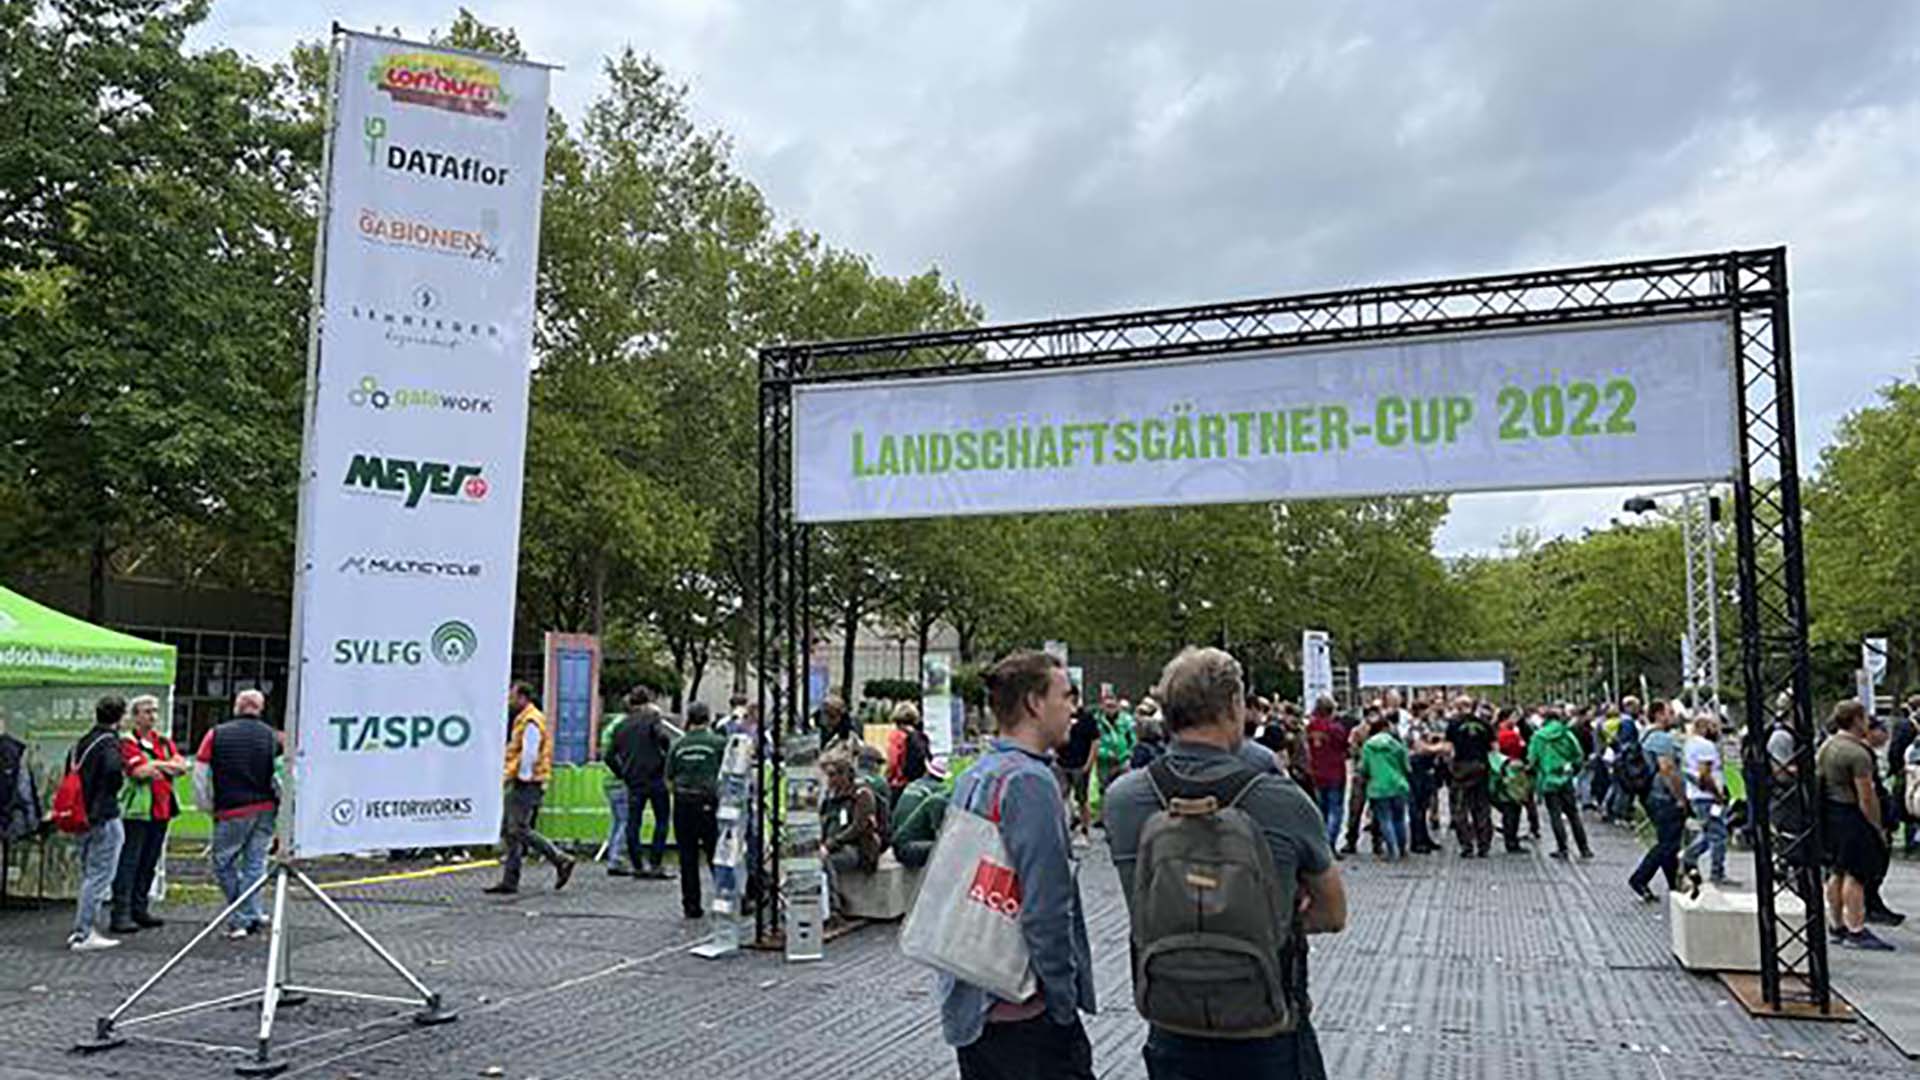 Landschaftsgärtner-Cup 2022: für Messegäste nicht zu übersehen 